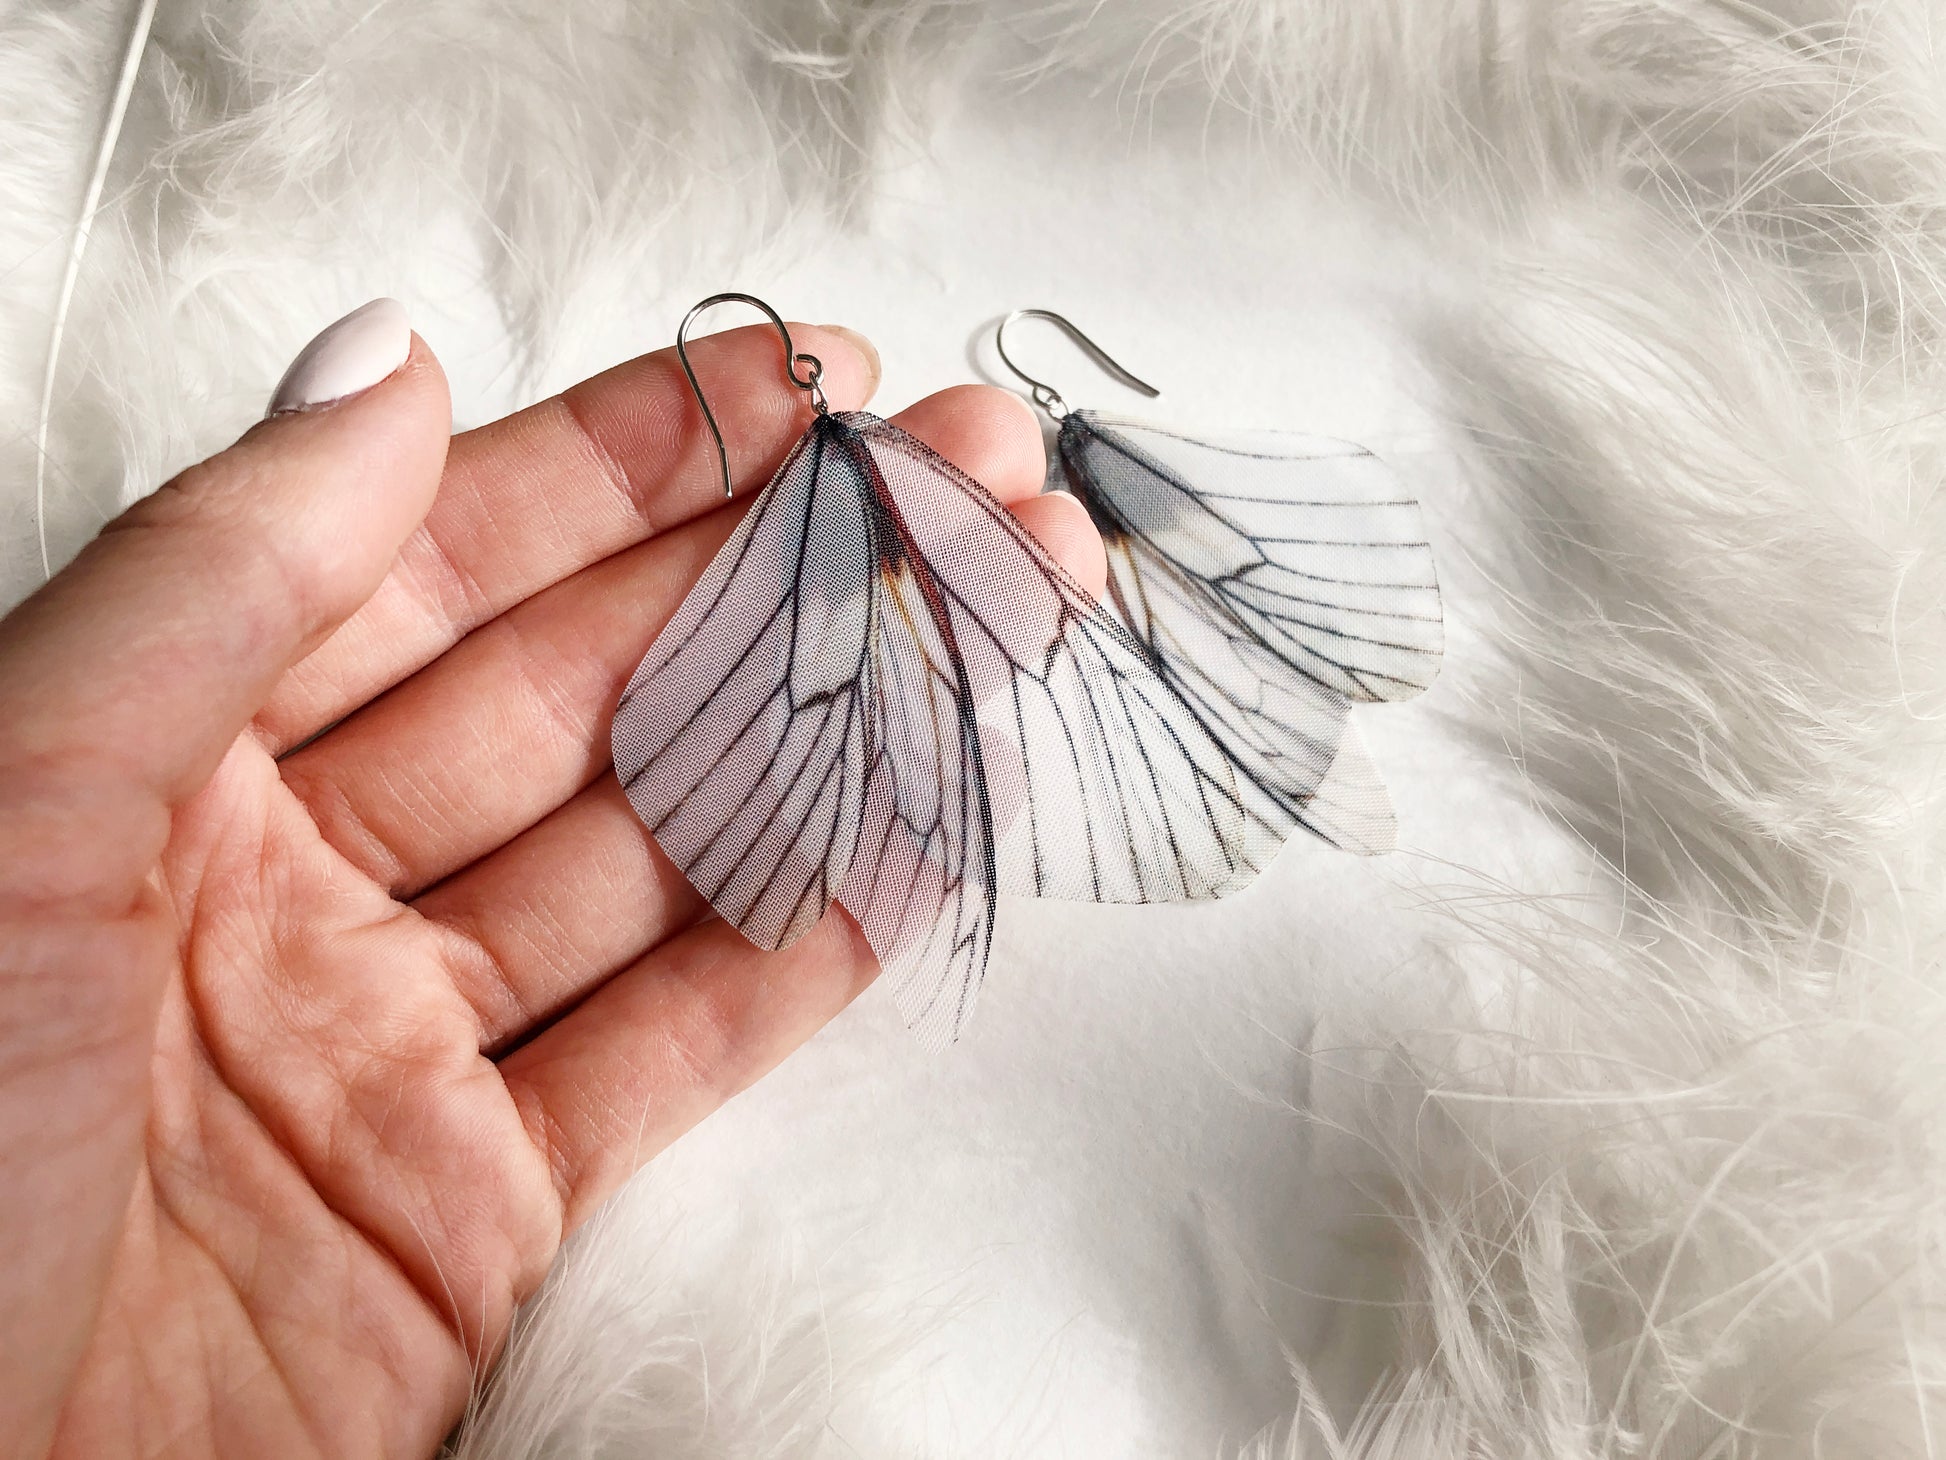 Aesthetic moth earrings with white angel wings